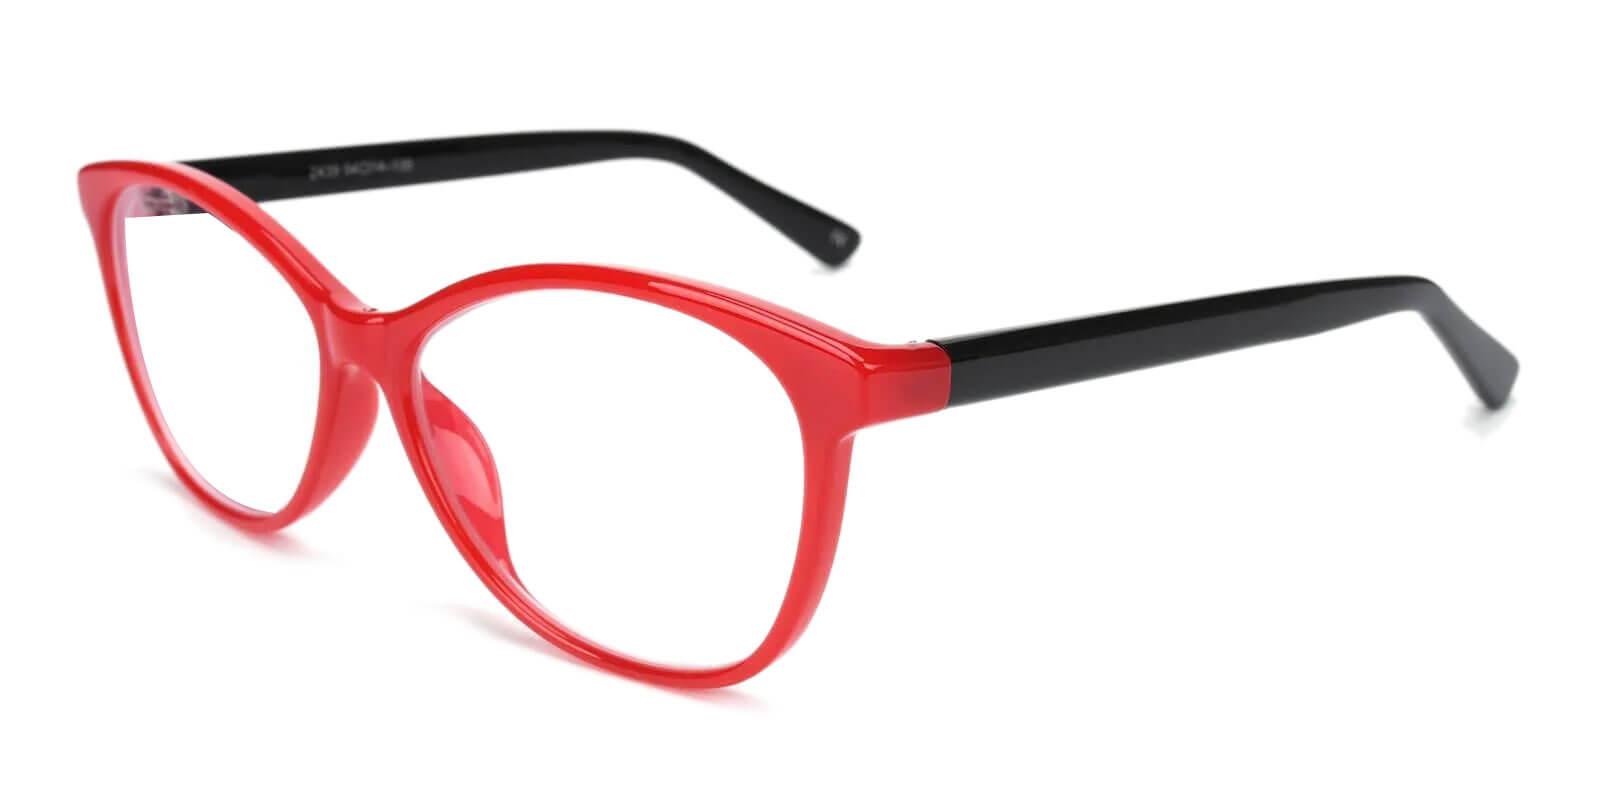 Lightworks Red Plastic Eyeglasses , UniversalBridgeFit Frames from ABBE Glasses